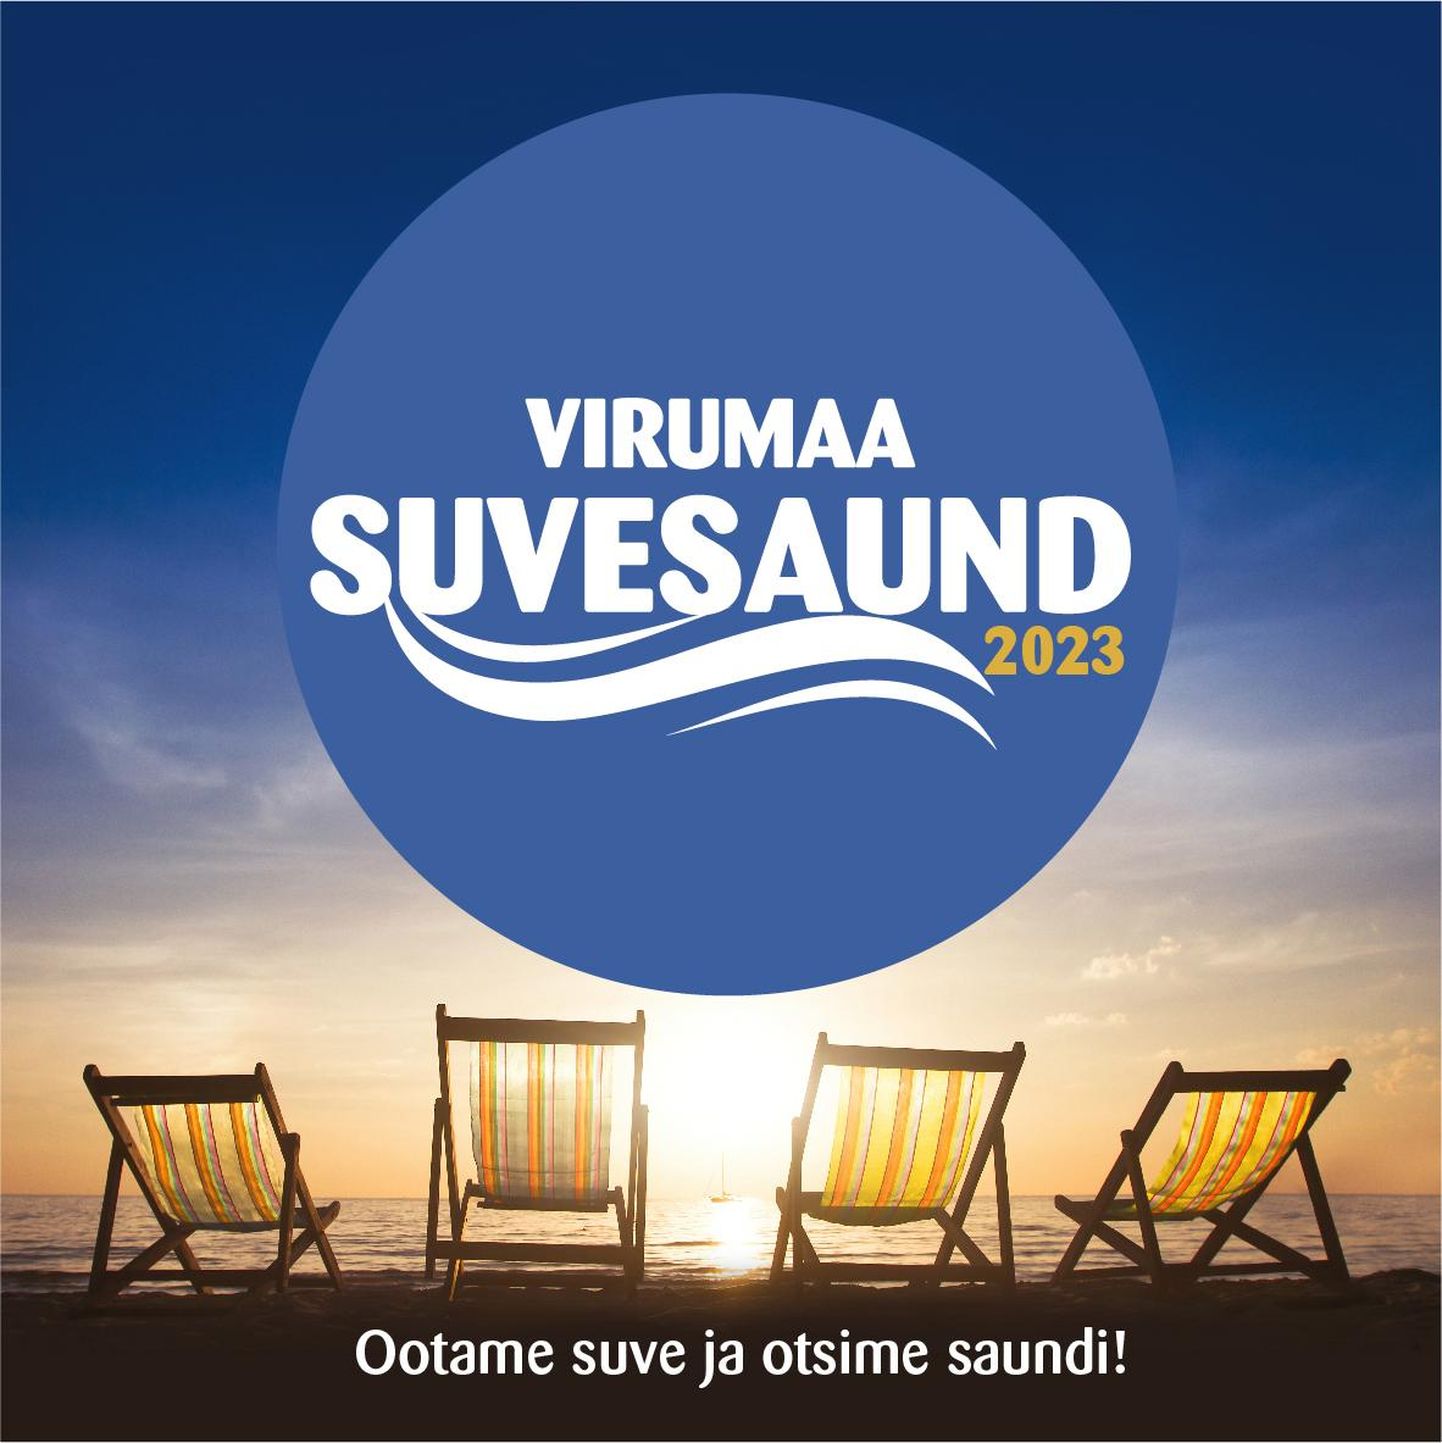 "Virumaa suvesaund 2023".